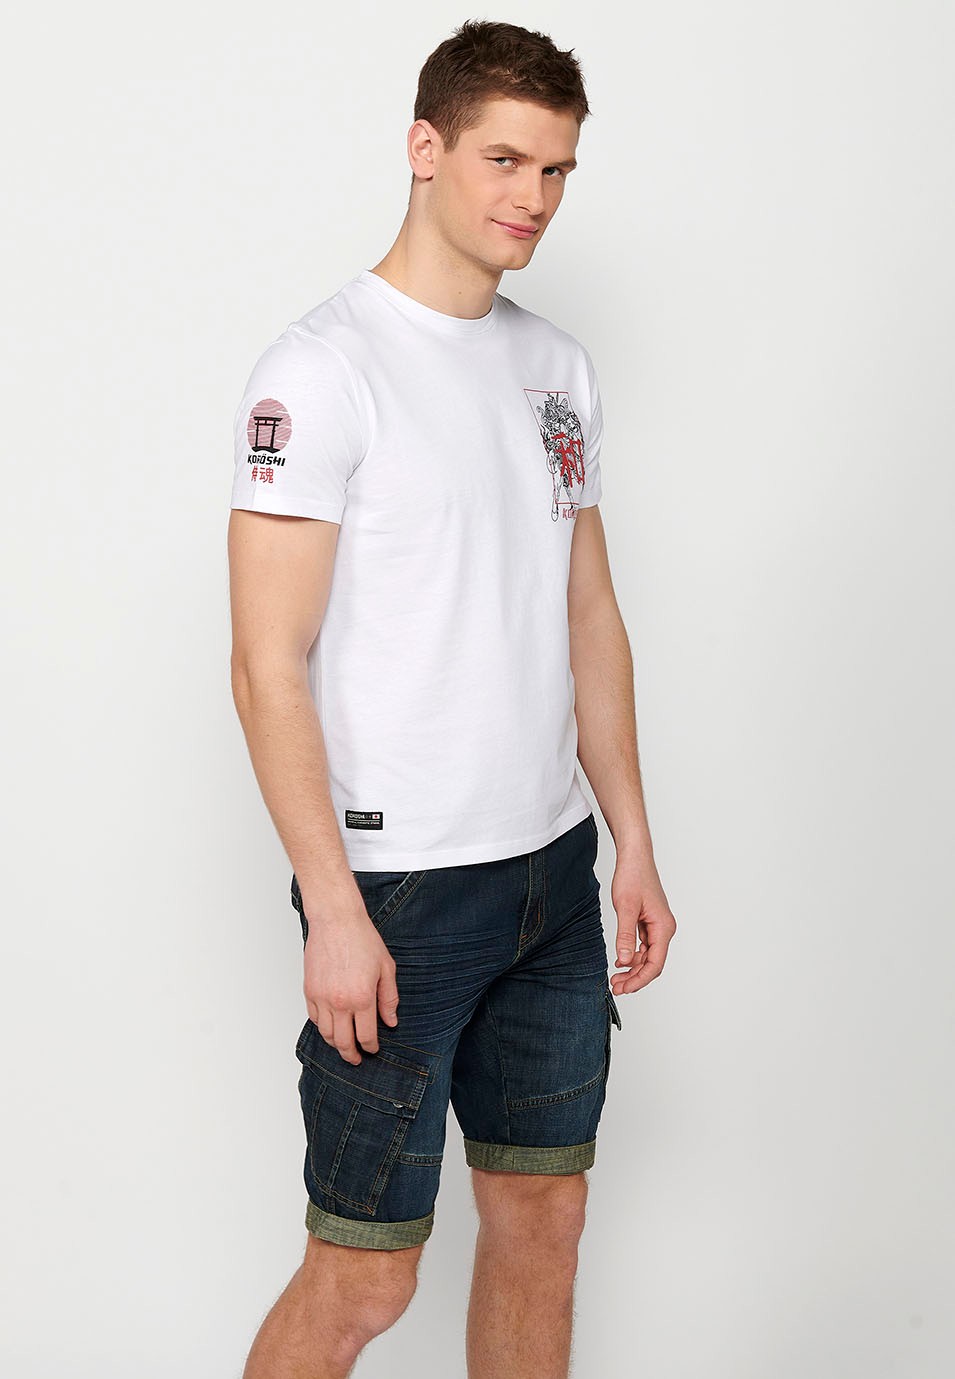 Weißes Kurzarm-T-Shirt mit Aufdruck auf der Rückseite für Herren